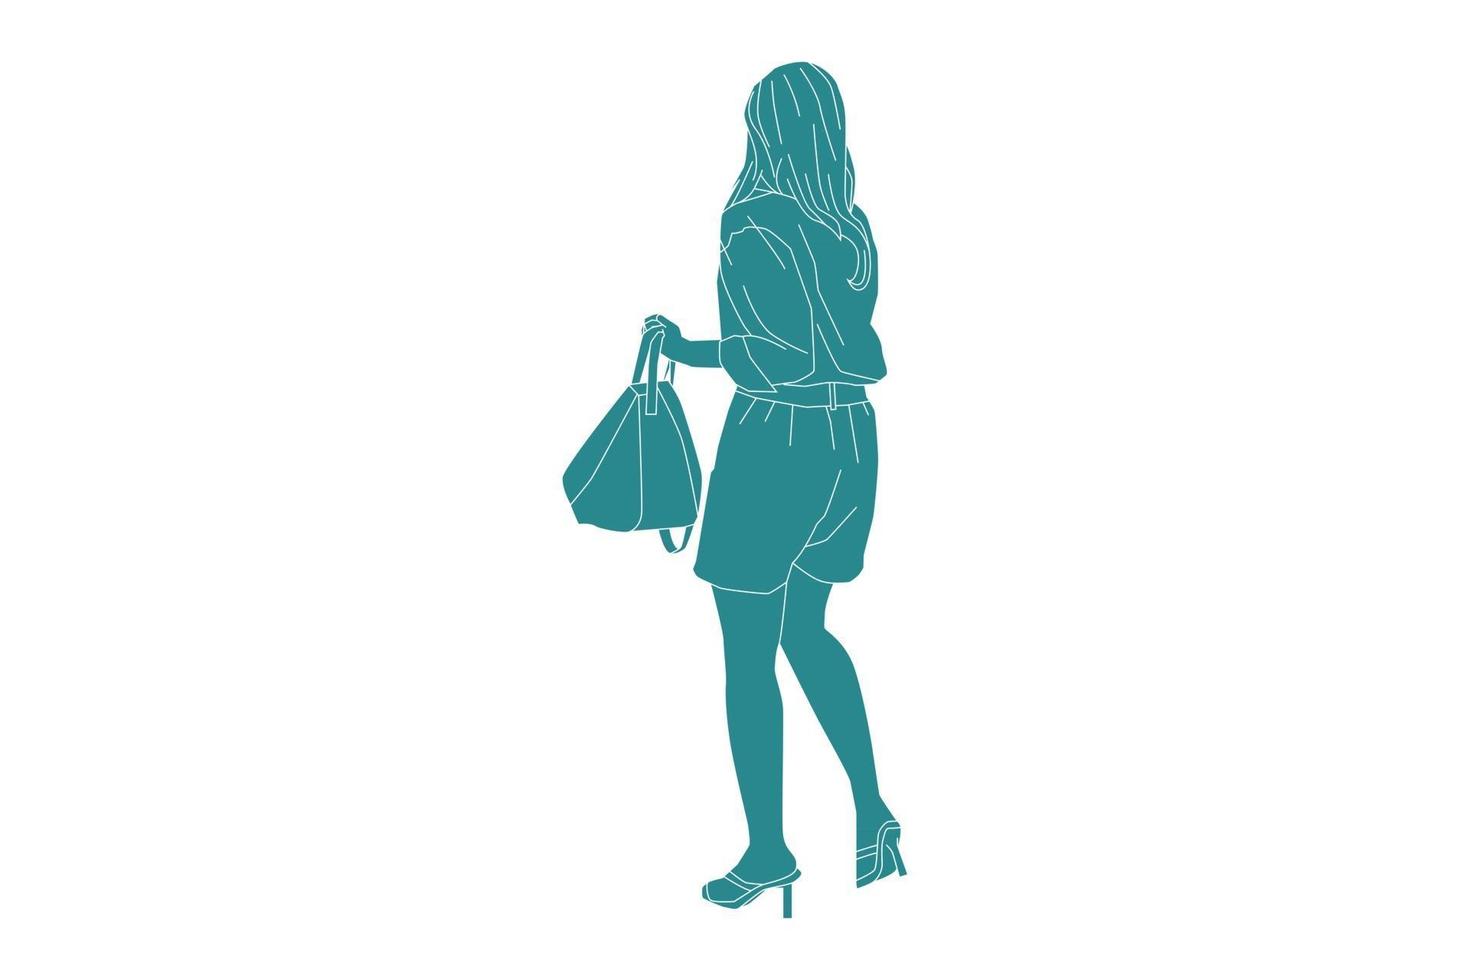 vektorillustration av moderiktig kvinna som går på sidoklädseln med sin väska, platt stil med konturer vektor